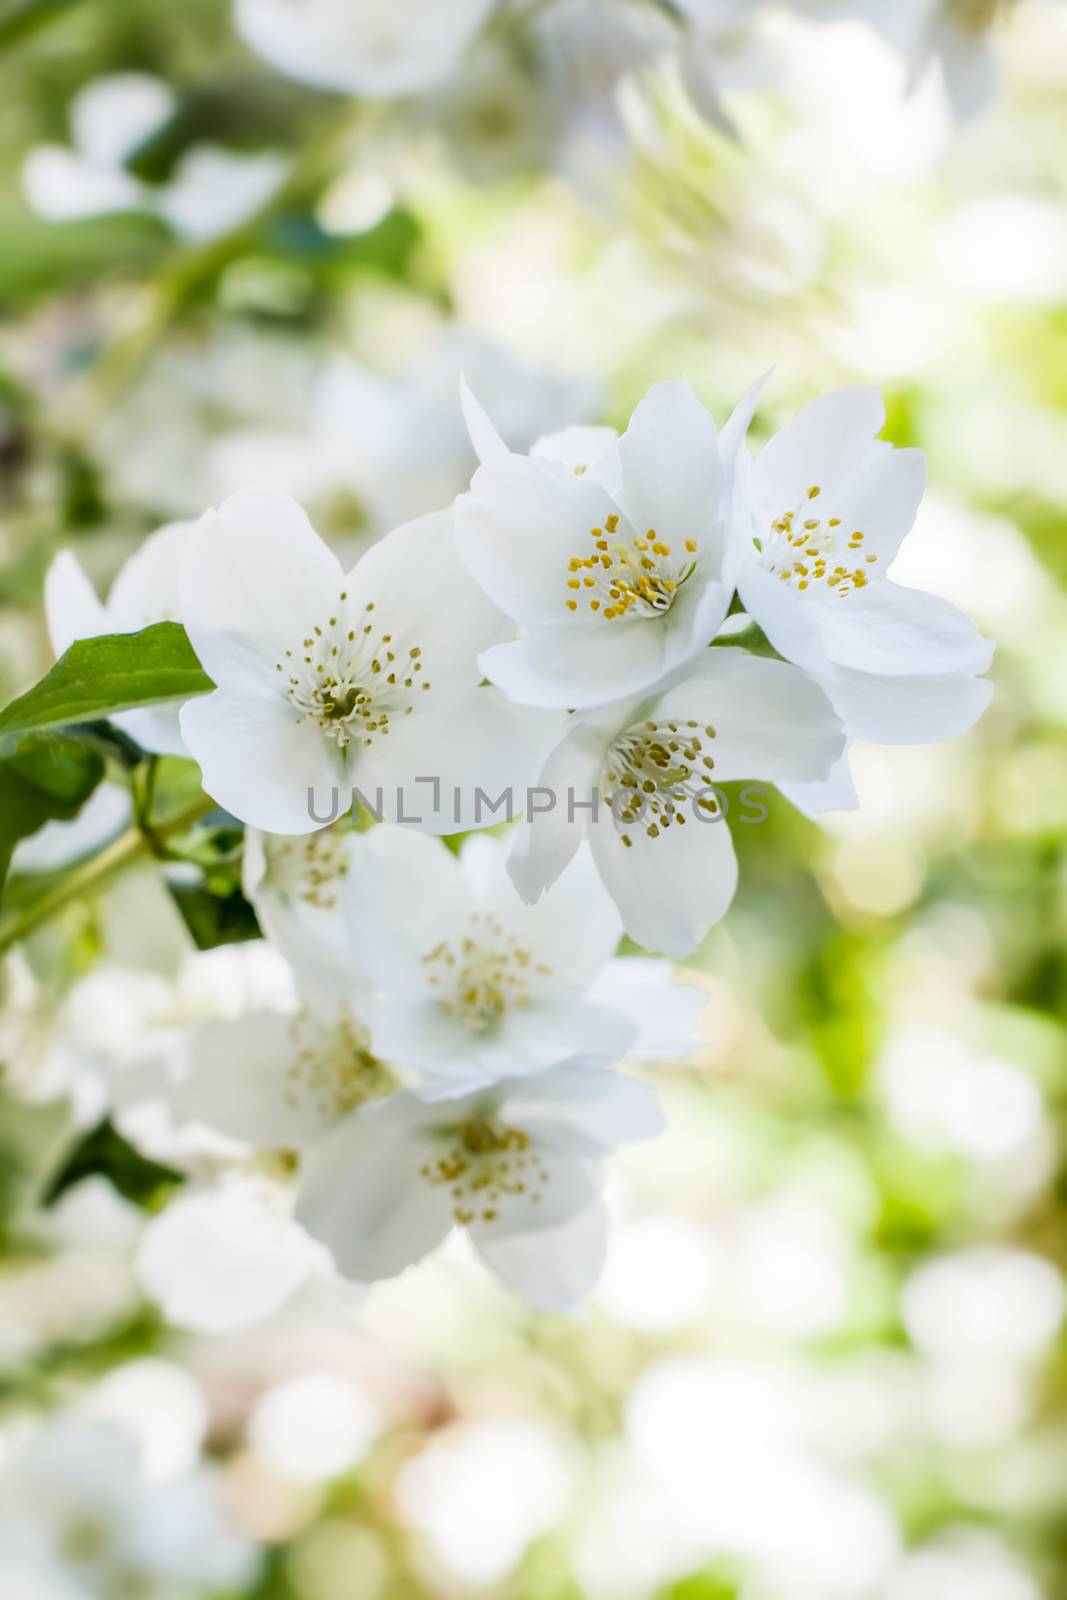 Sunlit white jasmine flowers on shrub in june